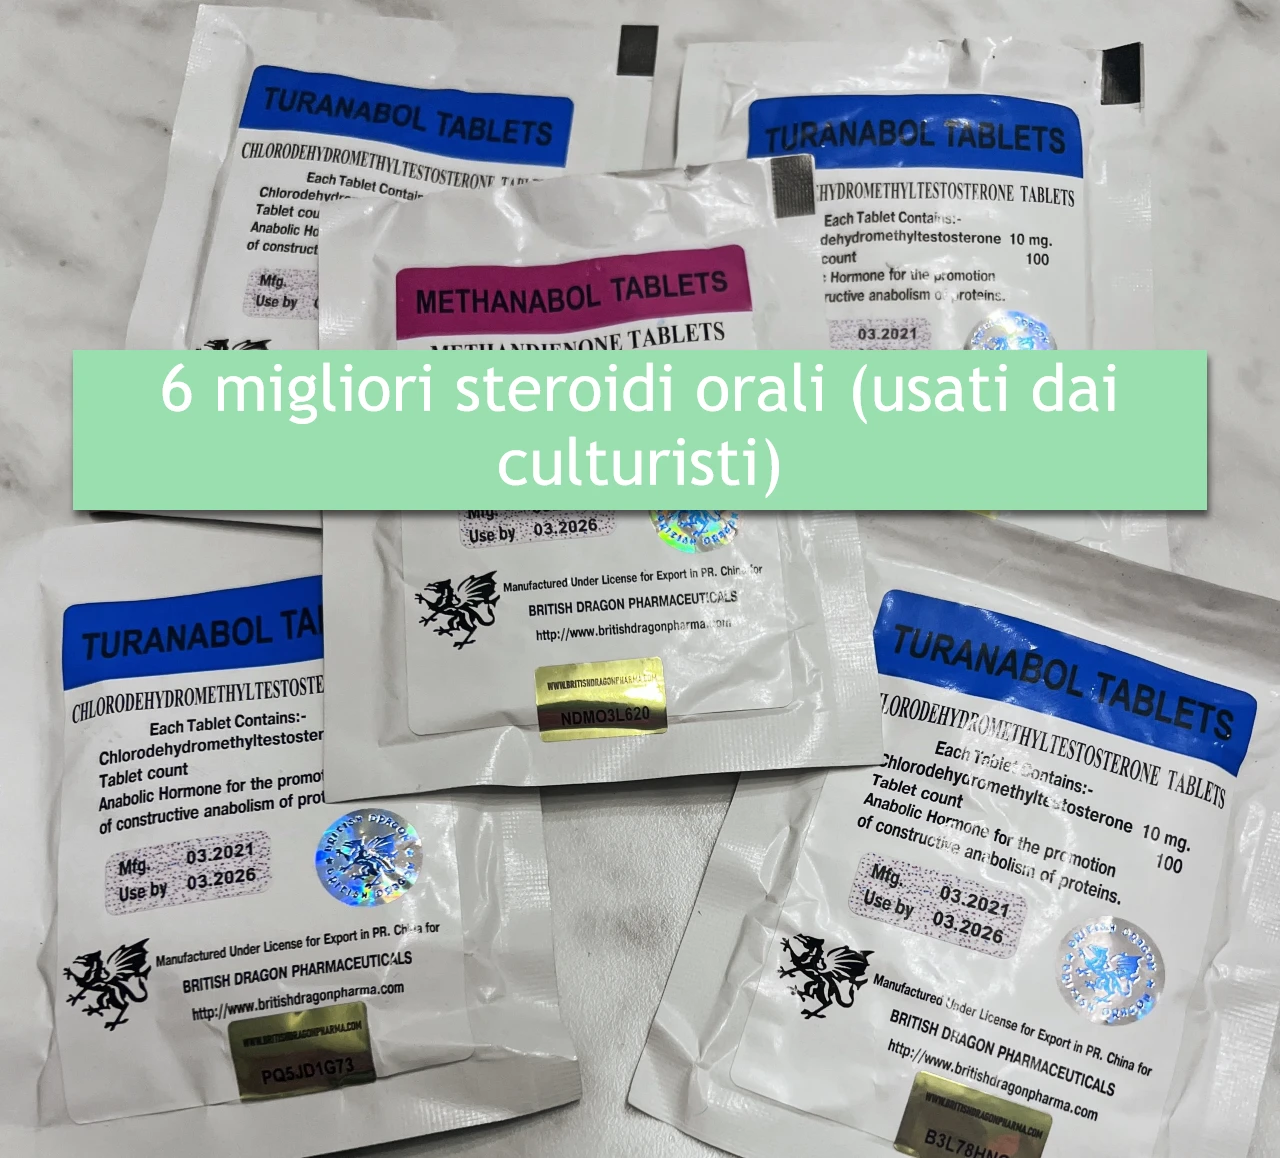 6 migliori steroidi orali (usati dai culturisti)